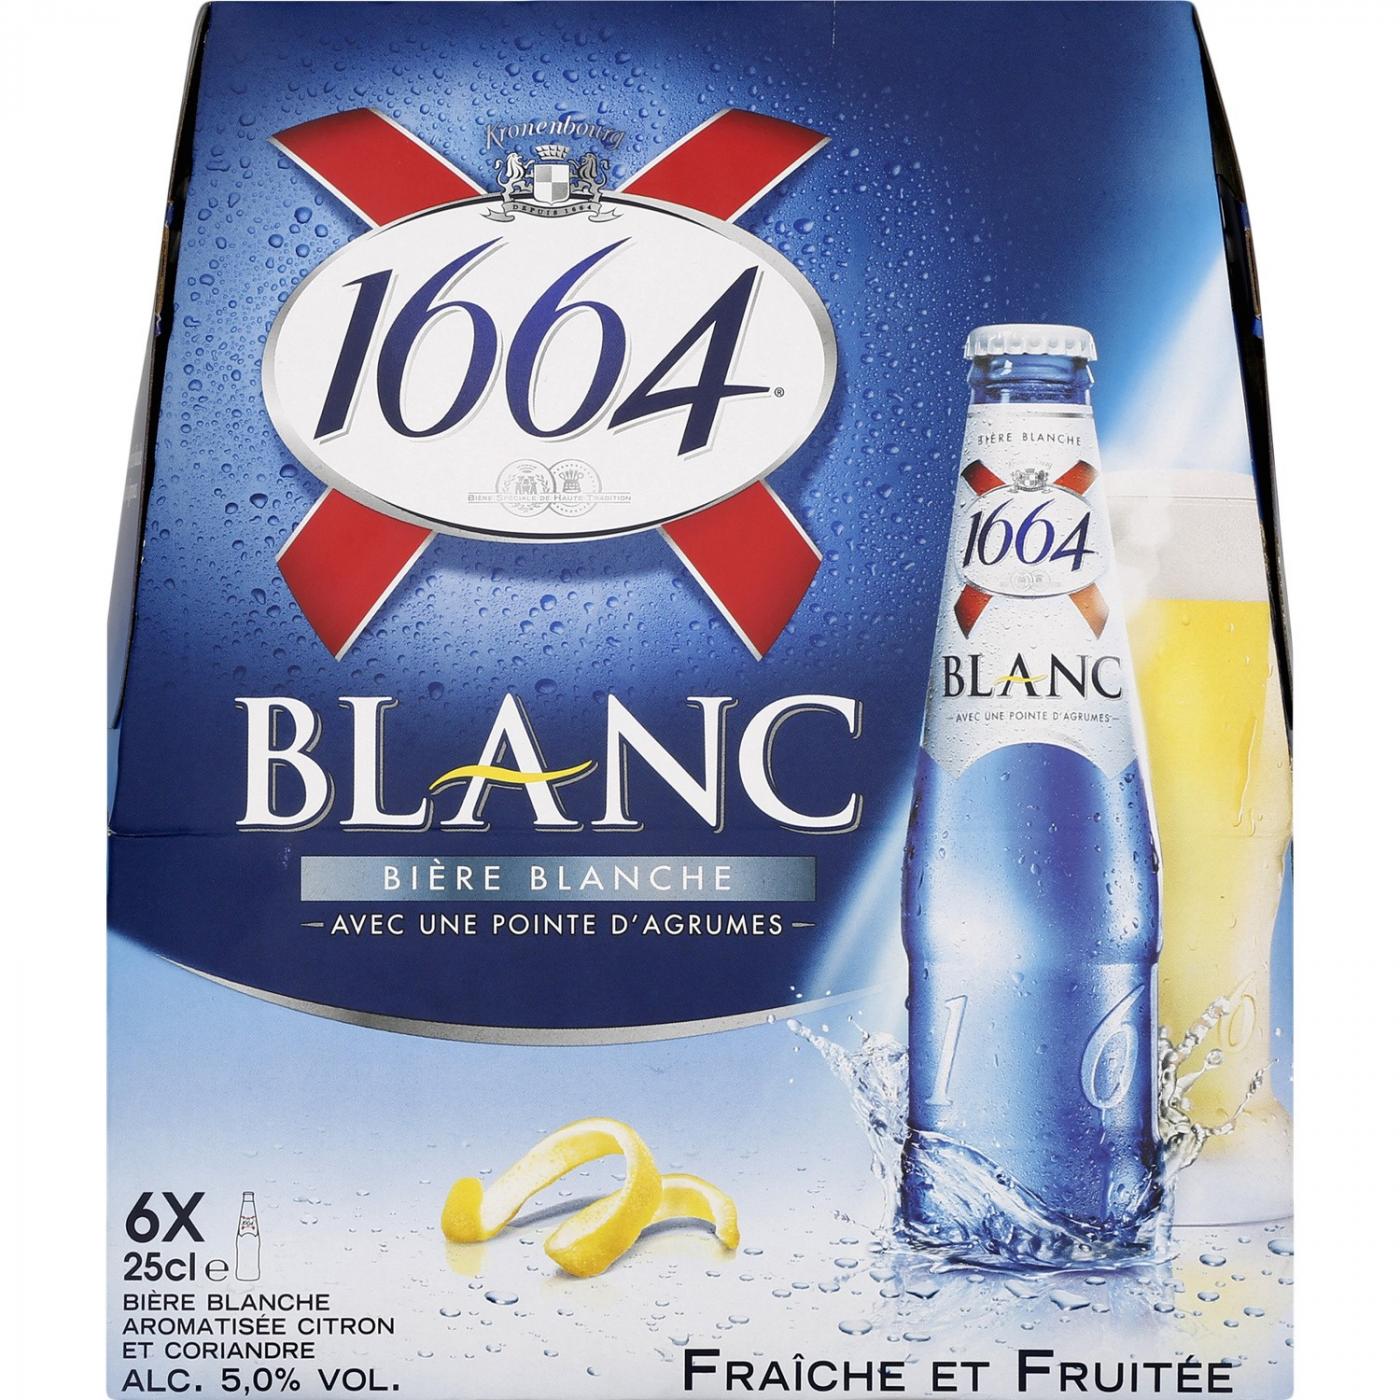 1664 White beer 250 ml x 6